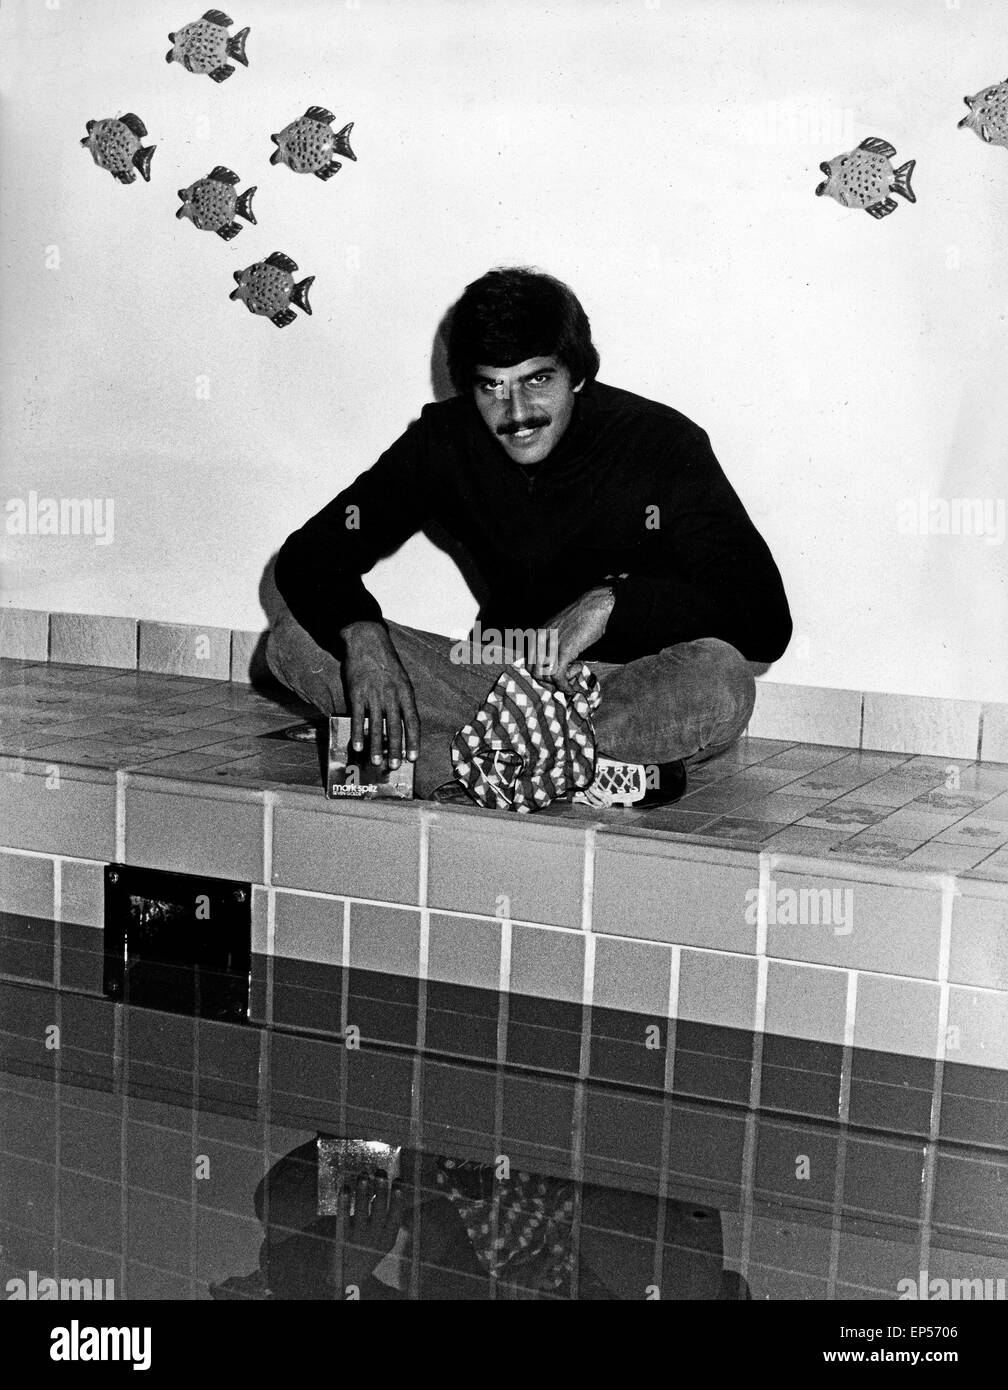 Der amerikanische Weltklasse Schwimmer Mark Spitz bei den Olympischen Spielen in München, Deutschland 1970er Jahre. American wor Stock Photo